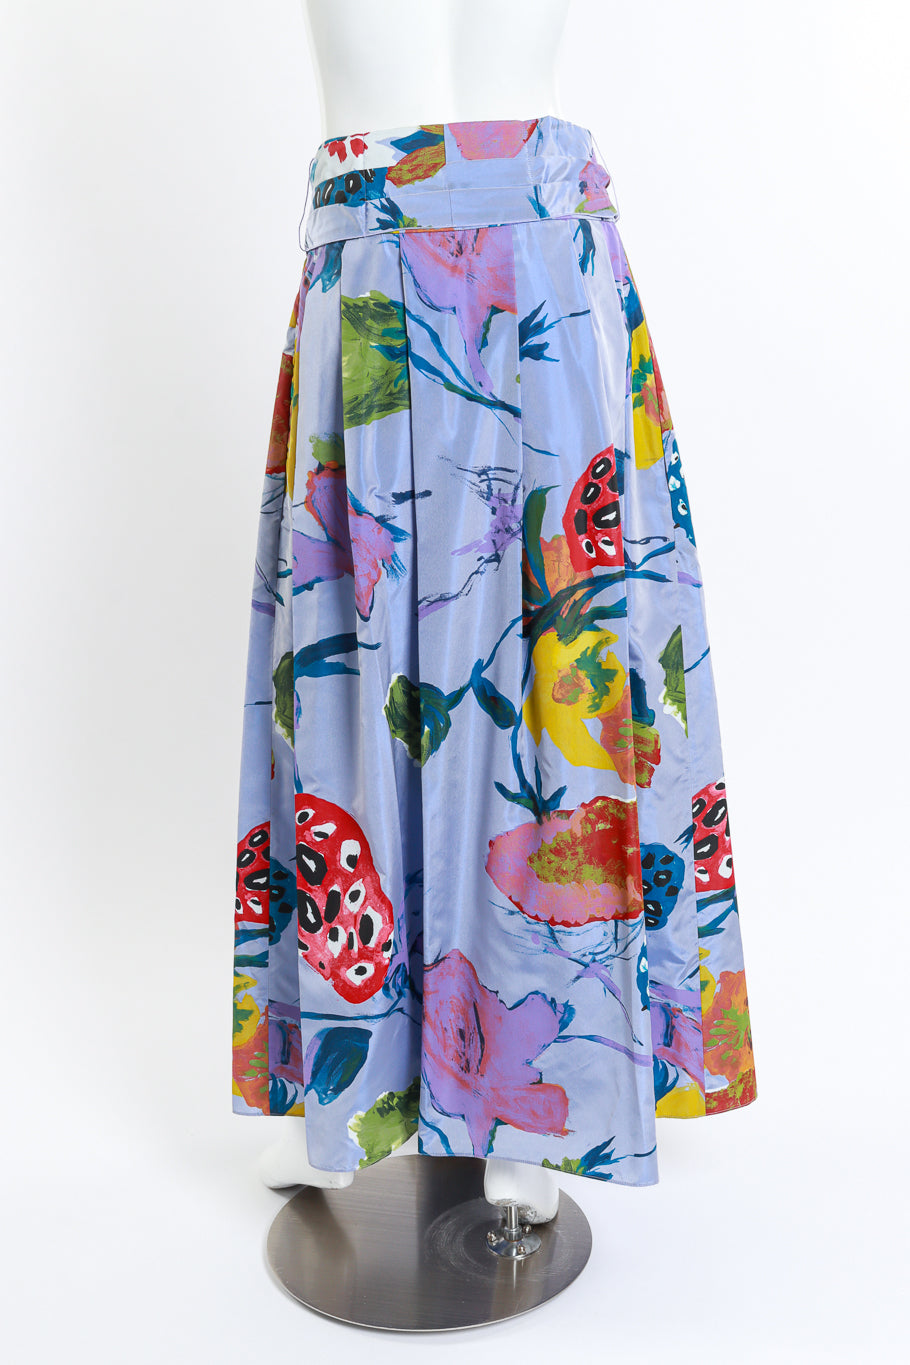 Vintage Christian Lacroix Floral Paint Print Skirt back on mannequin @recess la